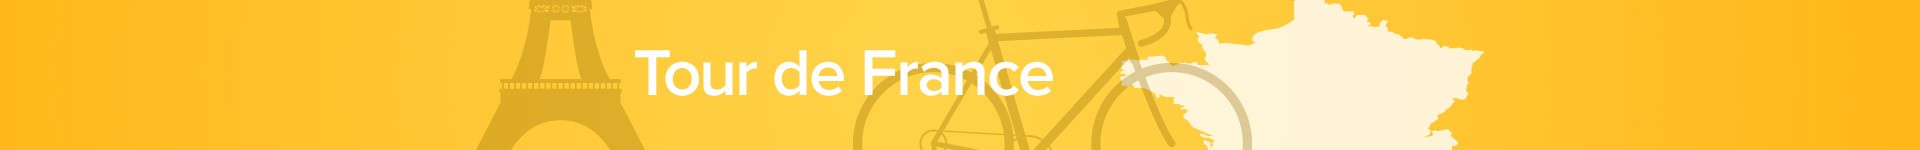 Tour de France Kollektion: Es dreht sich nicht nur um das Rennrad!